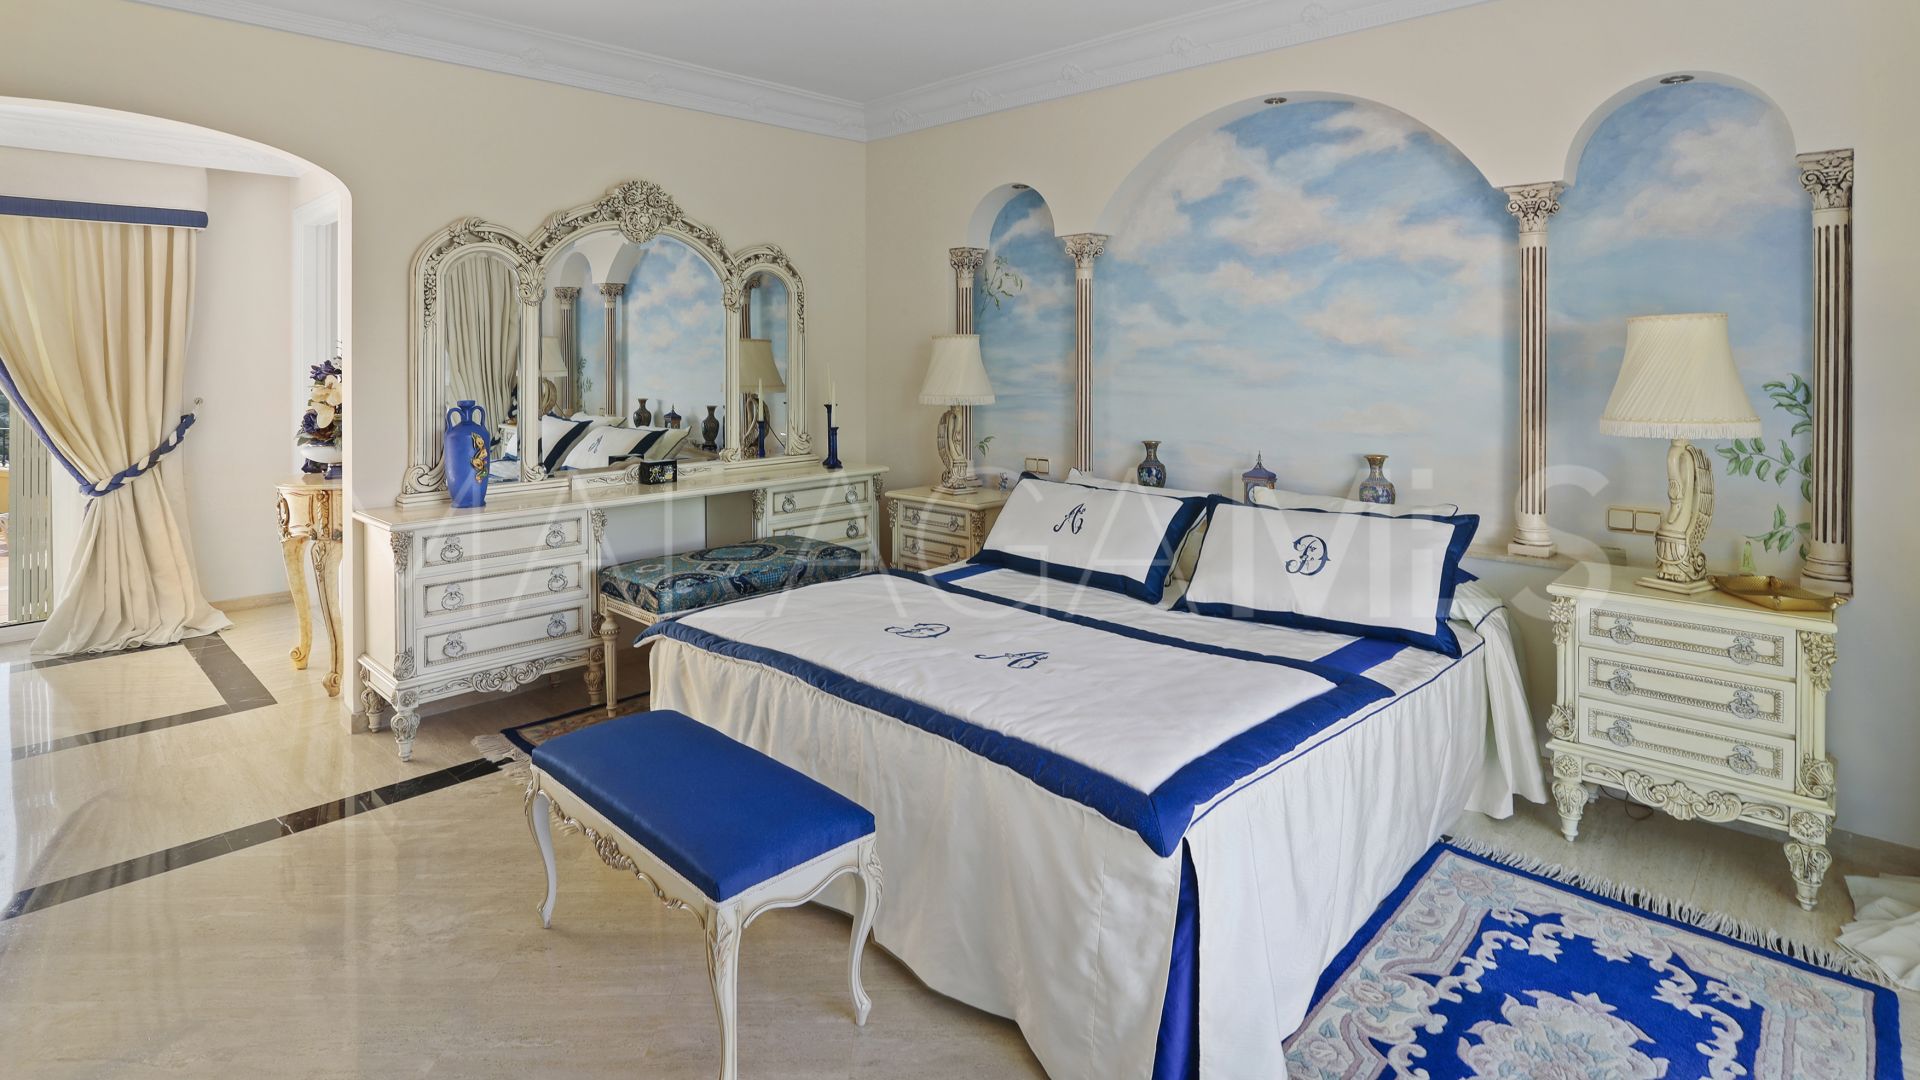 Benahavis, villa with 5 bedrooms for sale